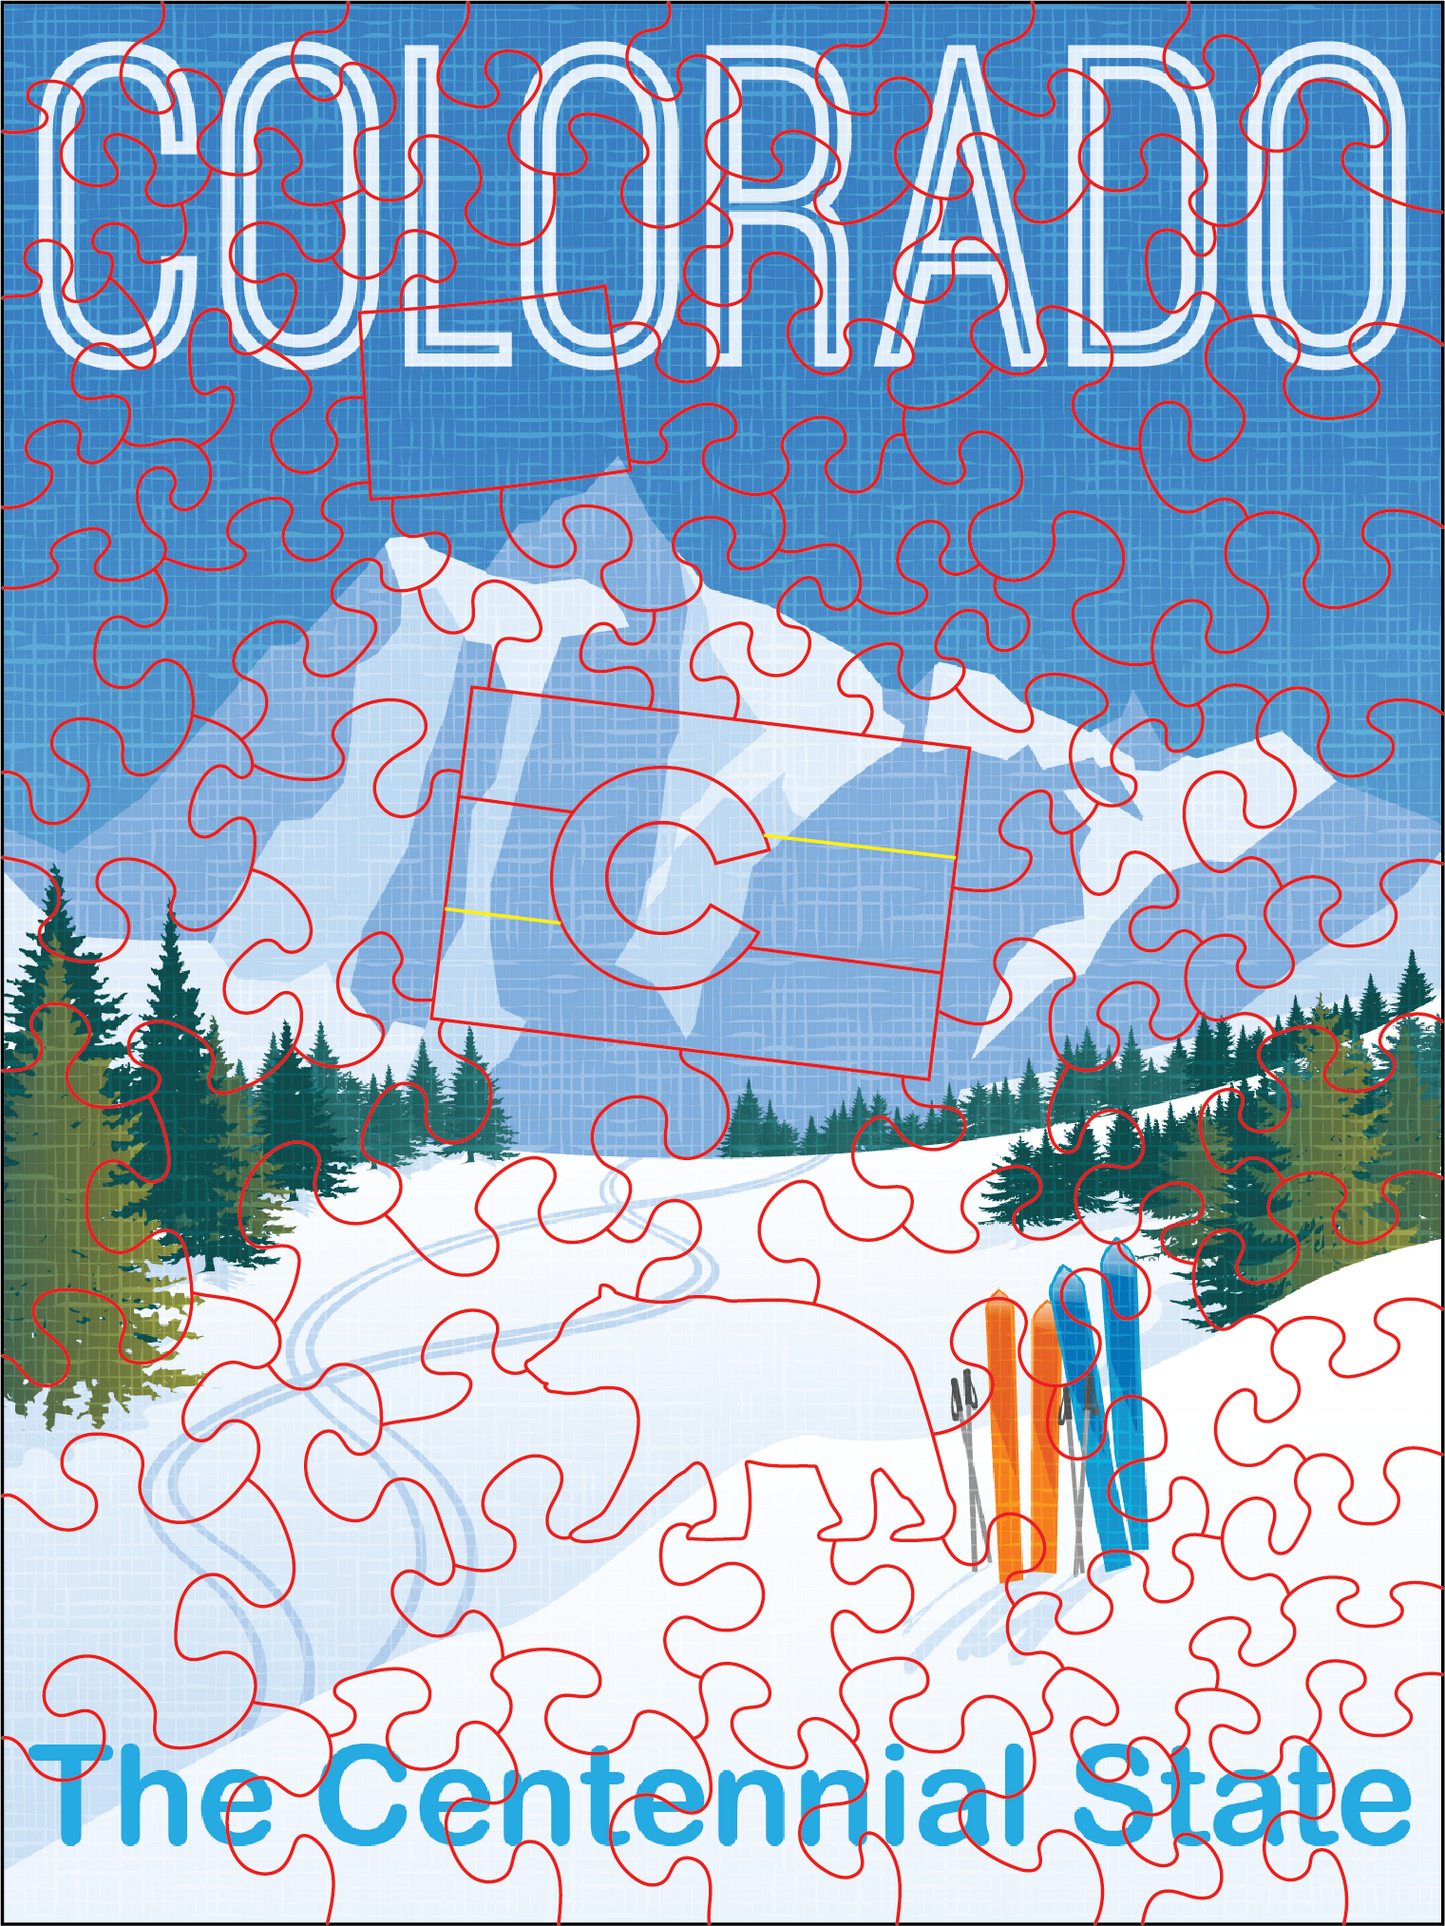 Colorado Poster